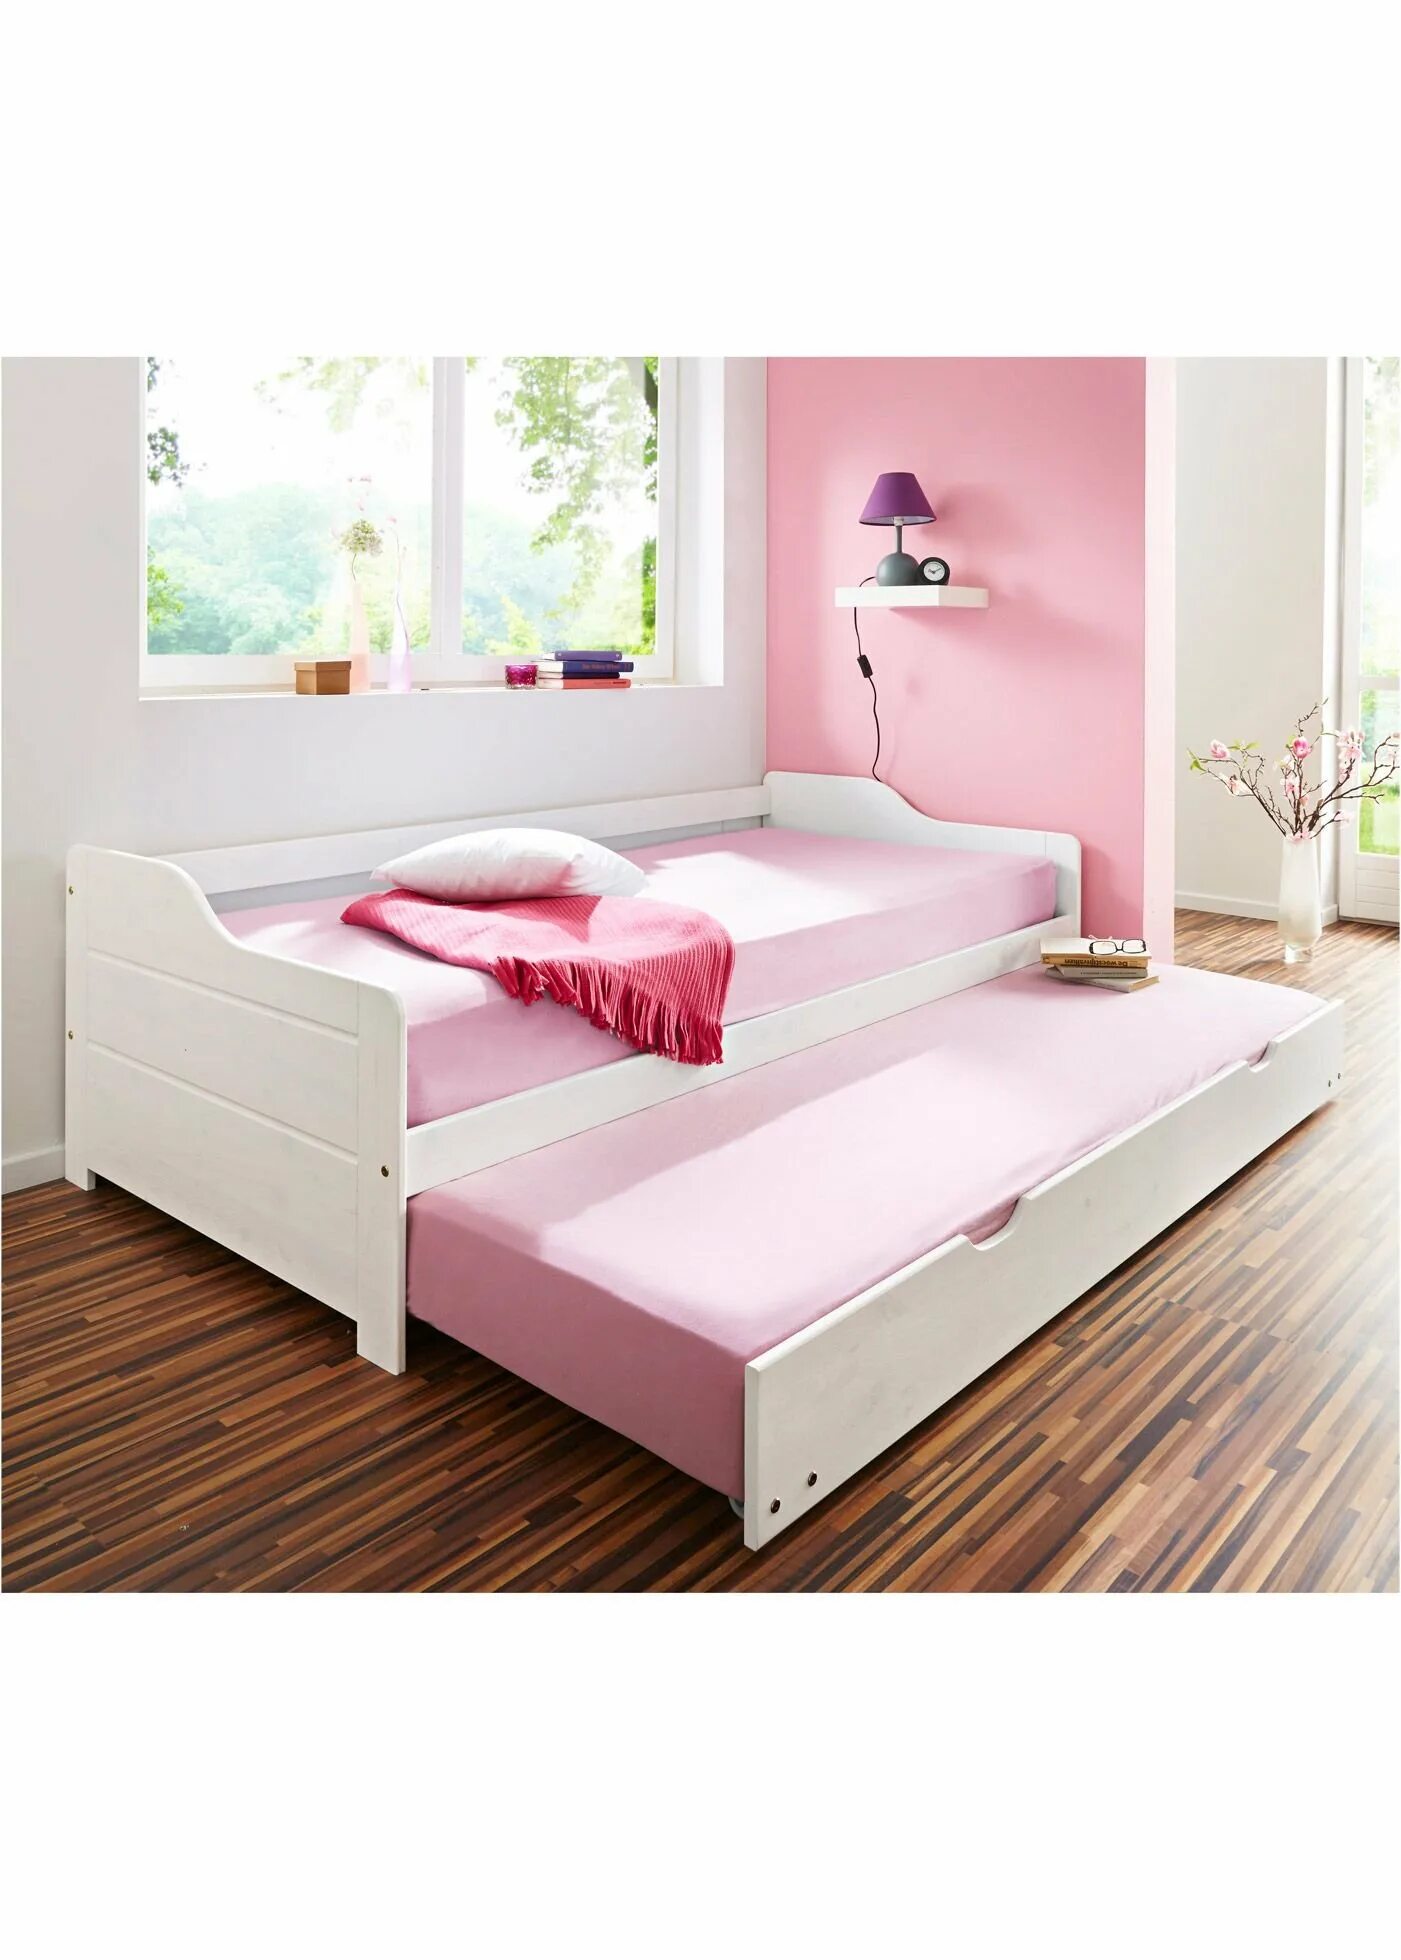 Кровати с дополнительным выдвижным местом. Двуспальная выдвижная кровать ikea. Выкатная кровать для двоих детей икеа. Кровать с дополнительным спальным местом выдвижная икеа. Ивиса 2-82 кровать с выдвижным спальным местом.